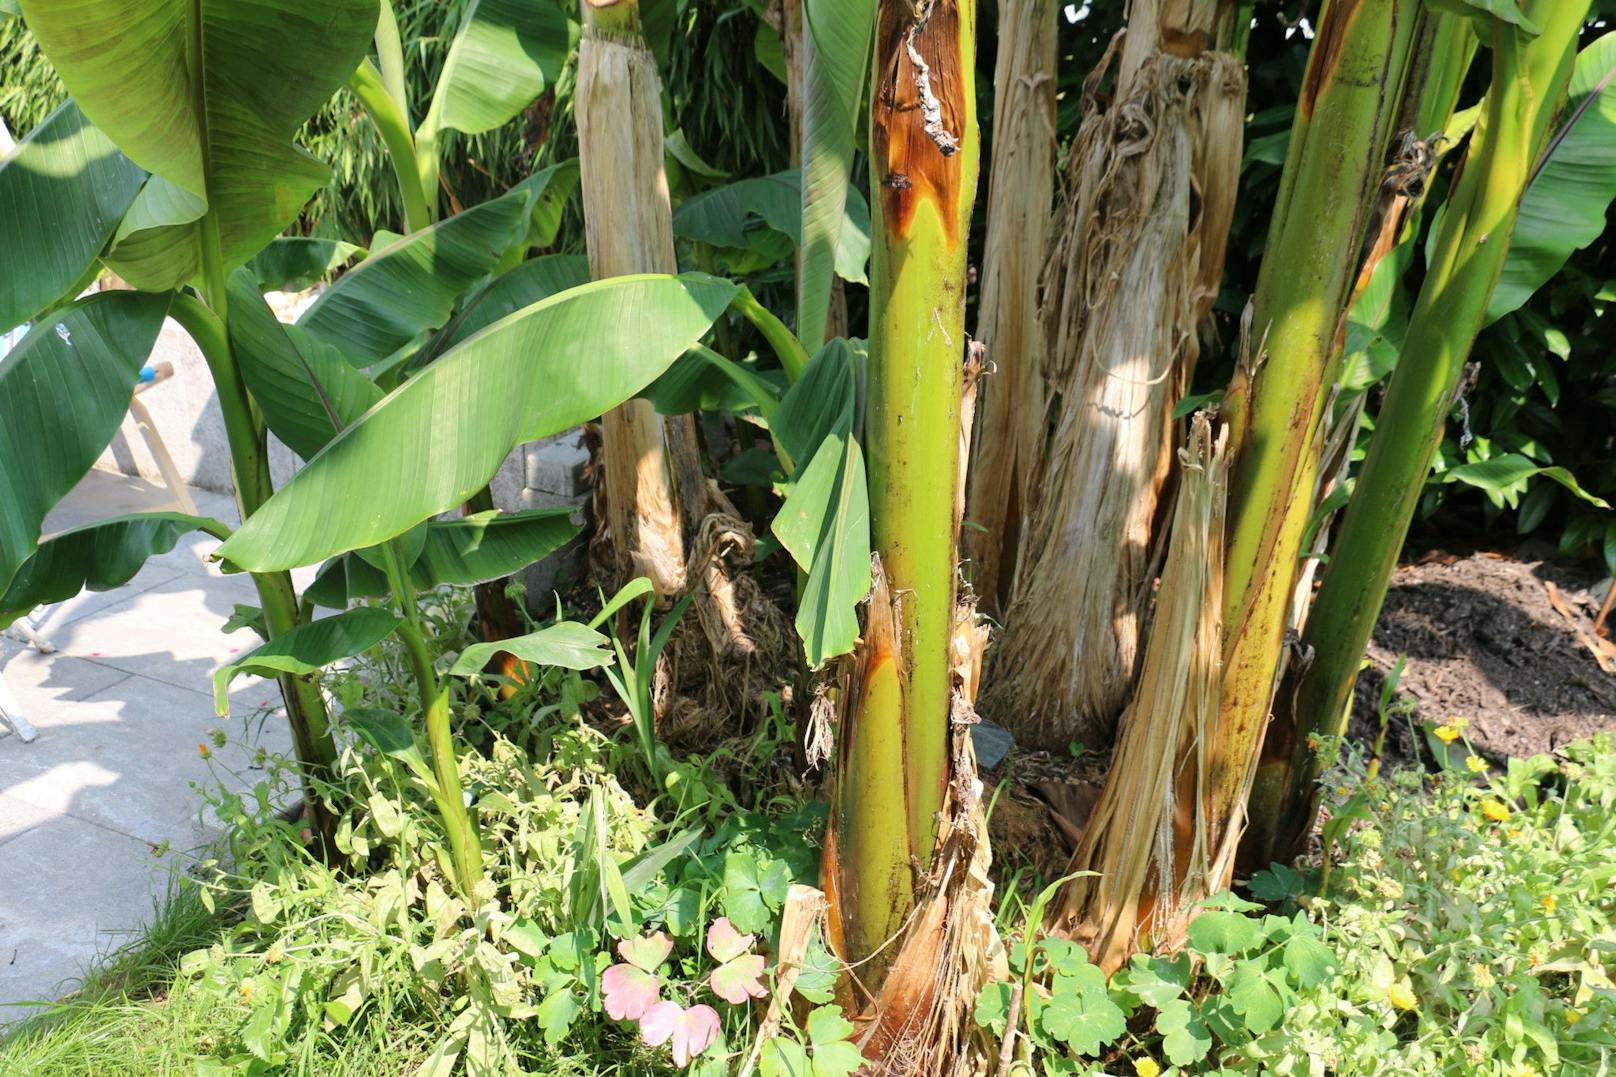 Die Bananen vermehren sich so schnell, sodass der Besitzer schon einige Stauden ausgraben und verschenken musste.